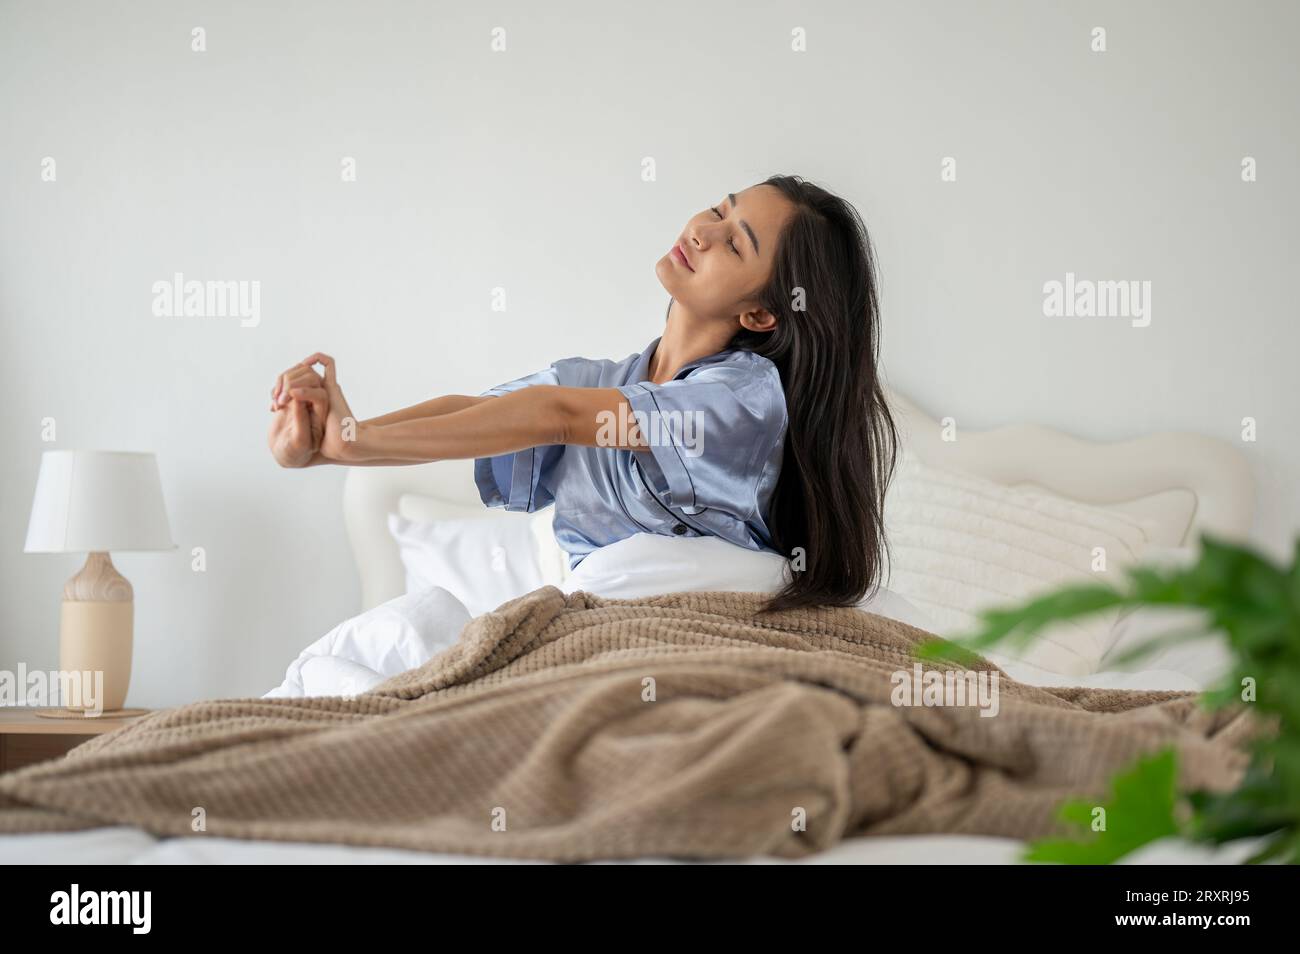 Una donna asiatica rilassata e spensierata in pigiama si sta allungando le braccia dopo essersi svegliata la mattina sul suo comodo letto. riposante, dormi bene, felici morni Foto Stock